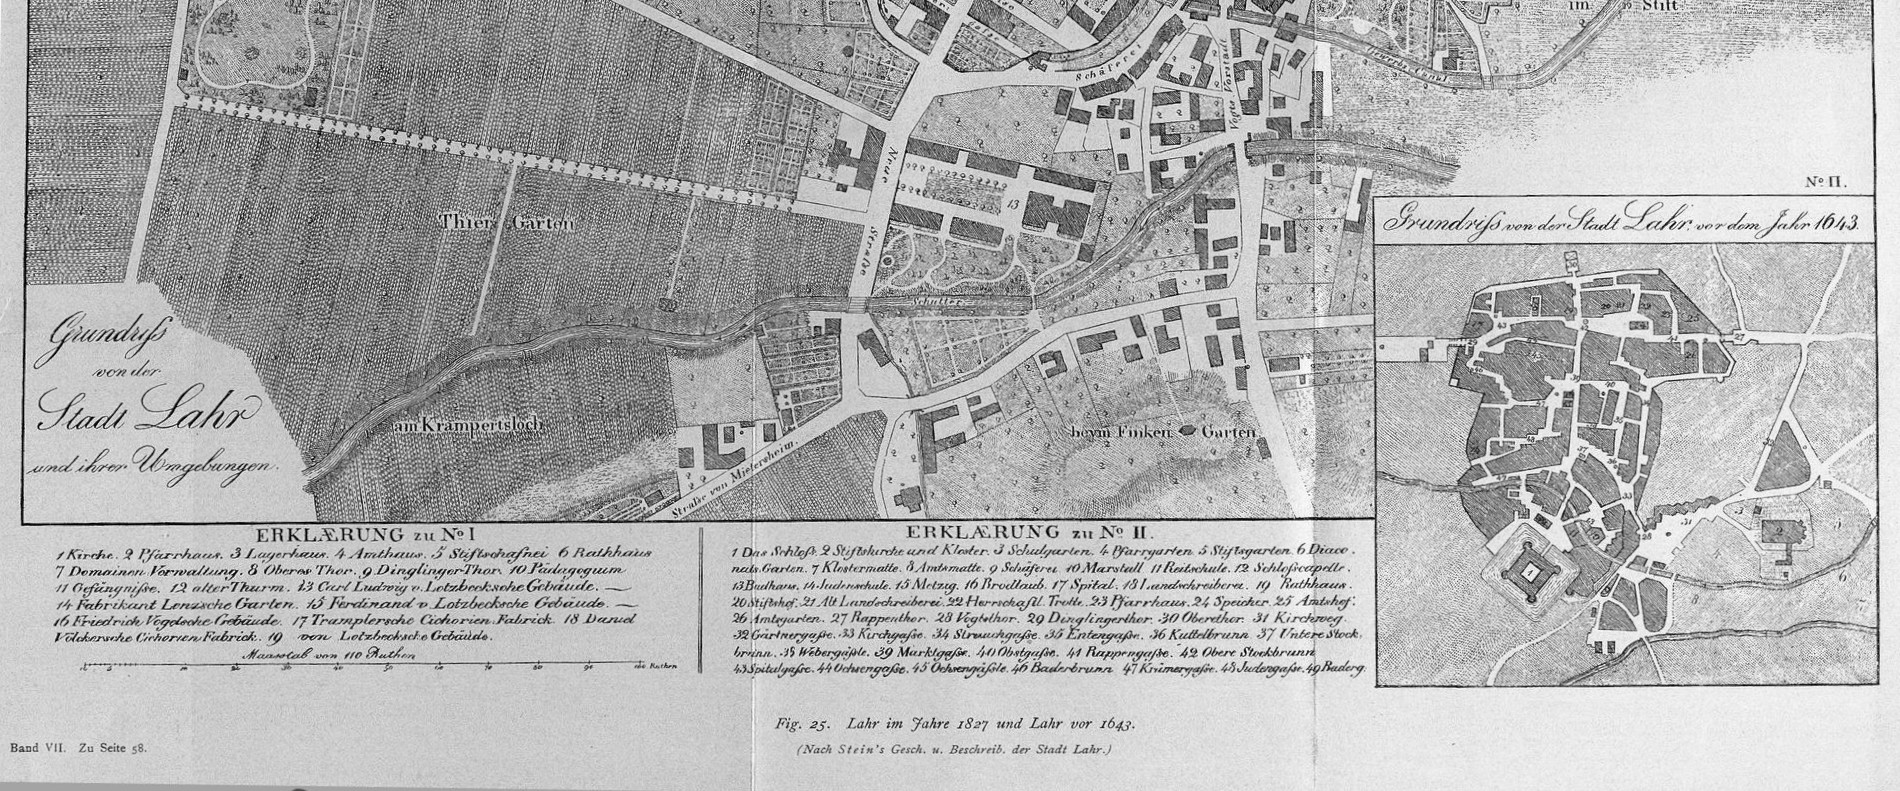 Fig. 25 - Lahr im Jahre 1827 und Lahr vor 1643 (Nach Steins Gesch. und Beschreib. der Stadt Lahr